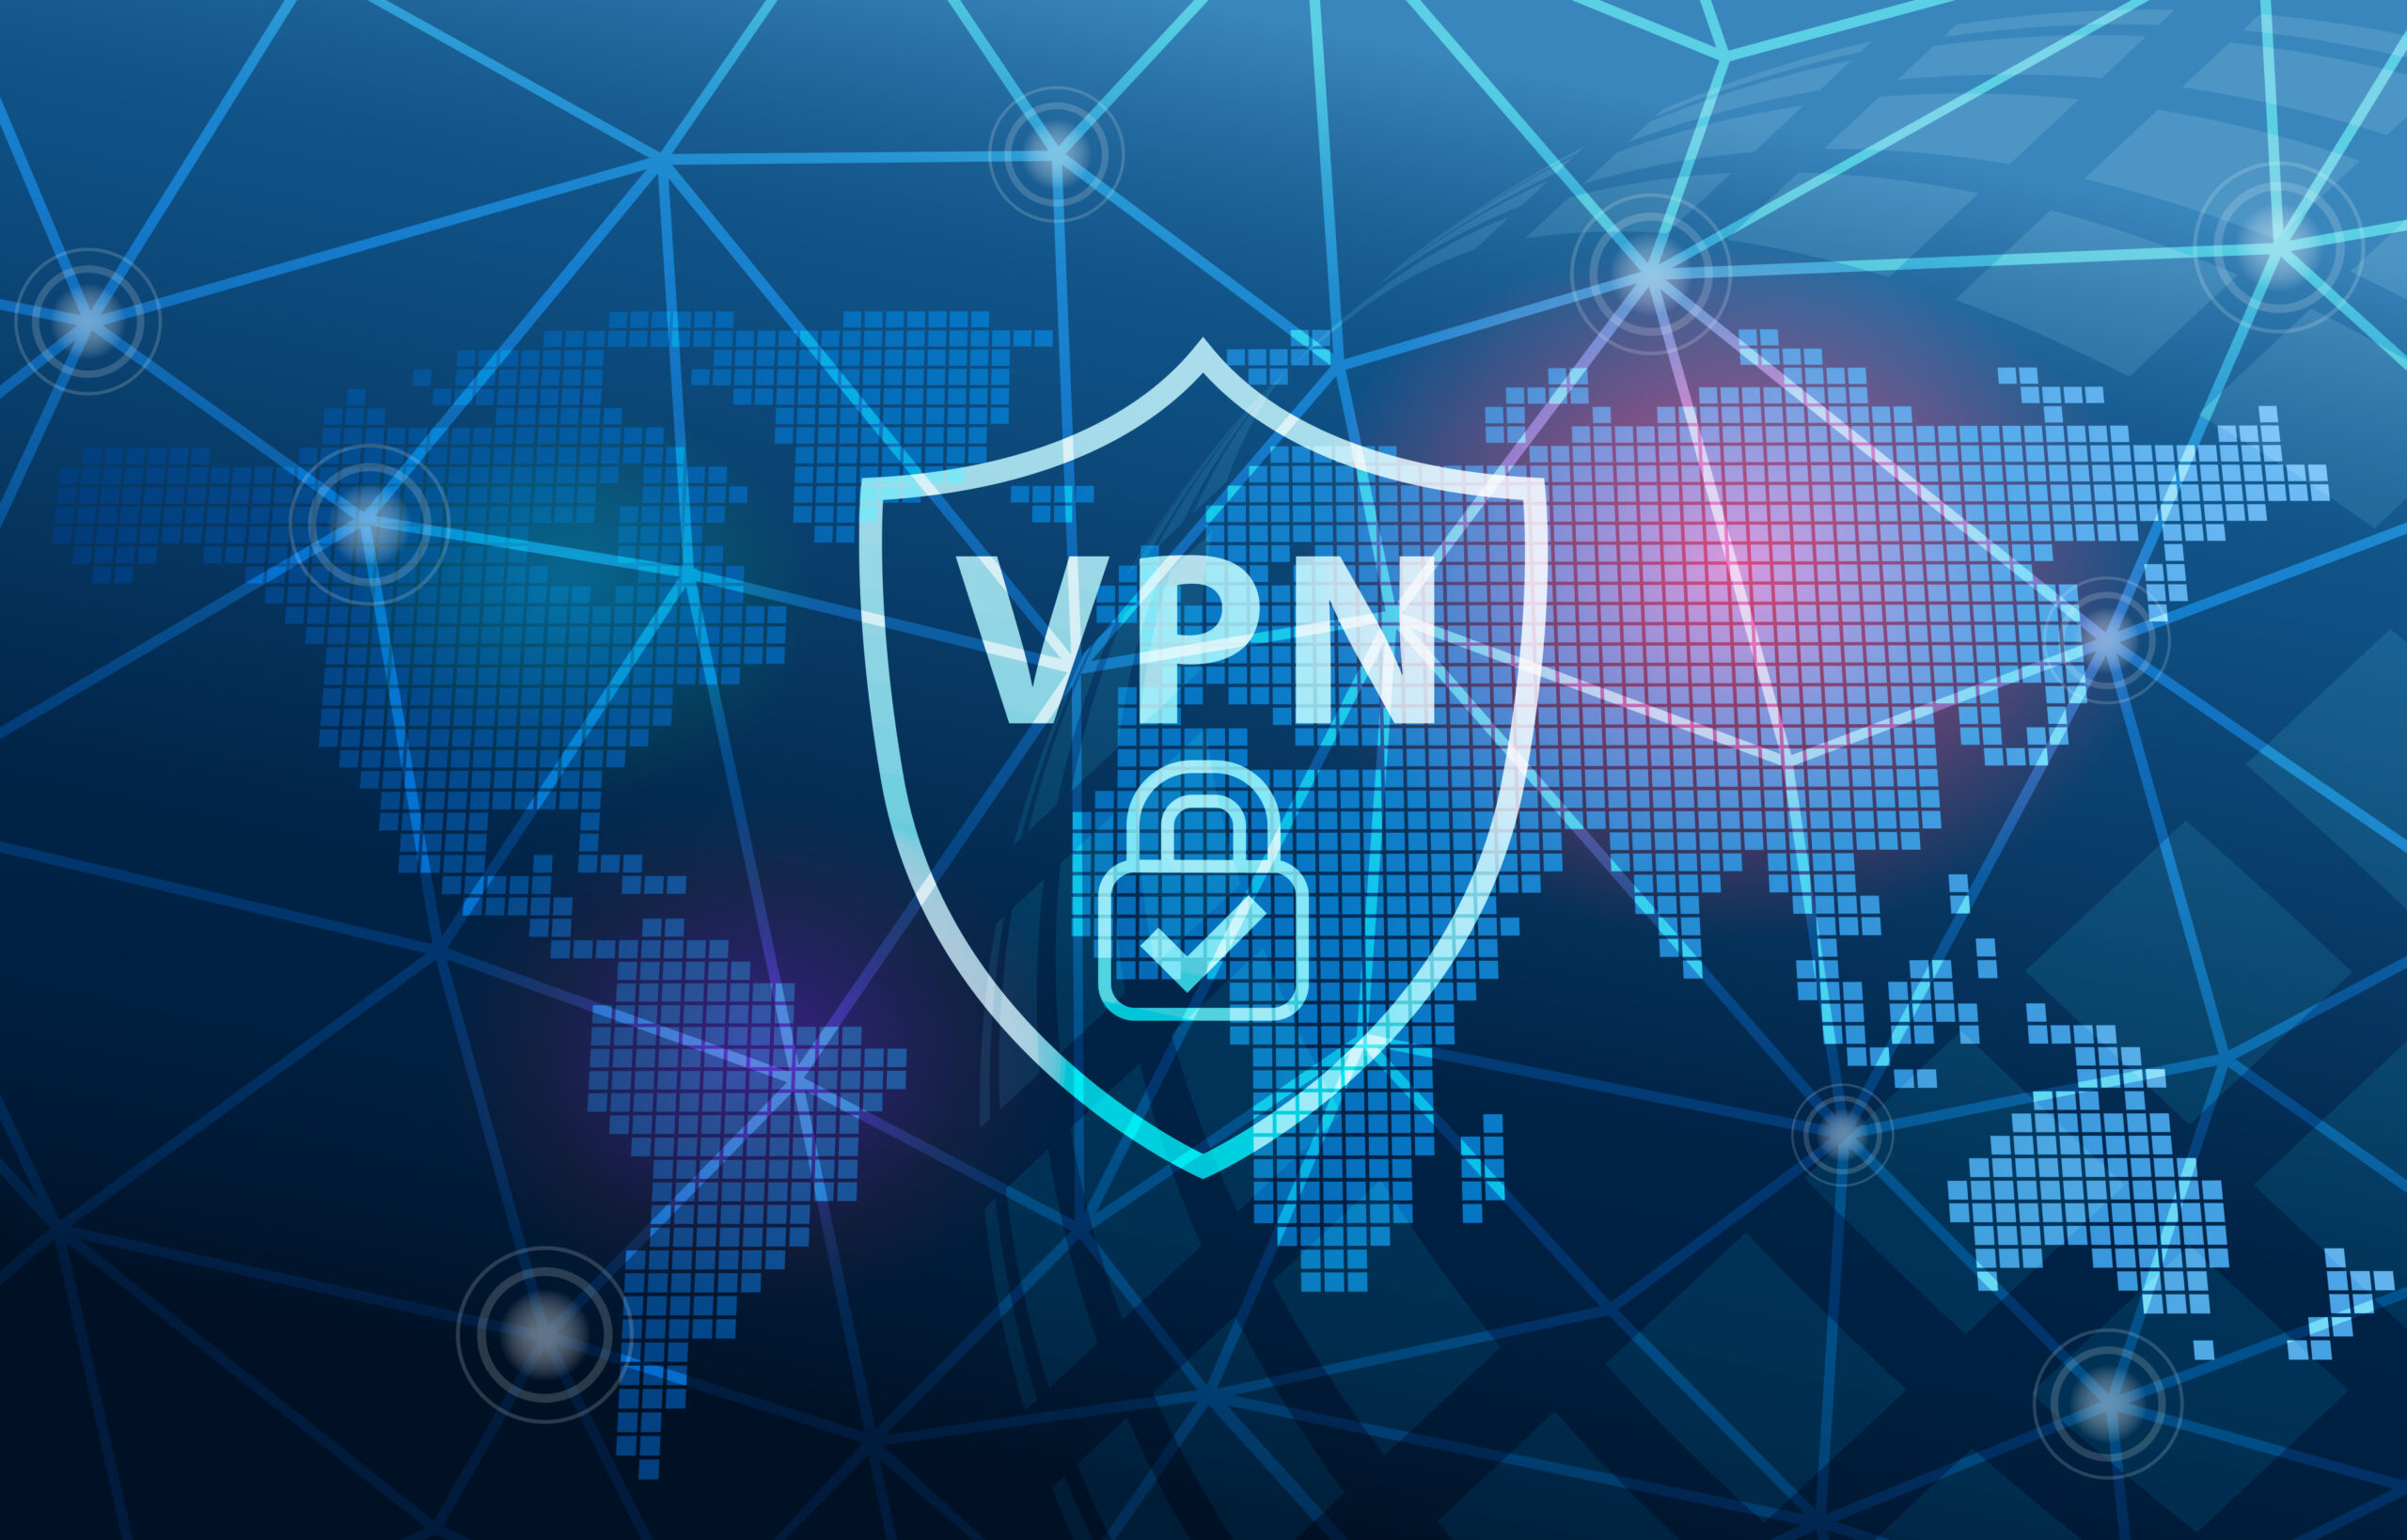 In Russland wurden VPN-Dienste massiv blockiert